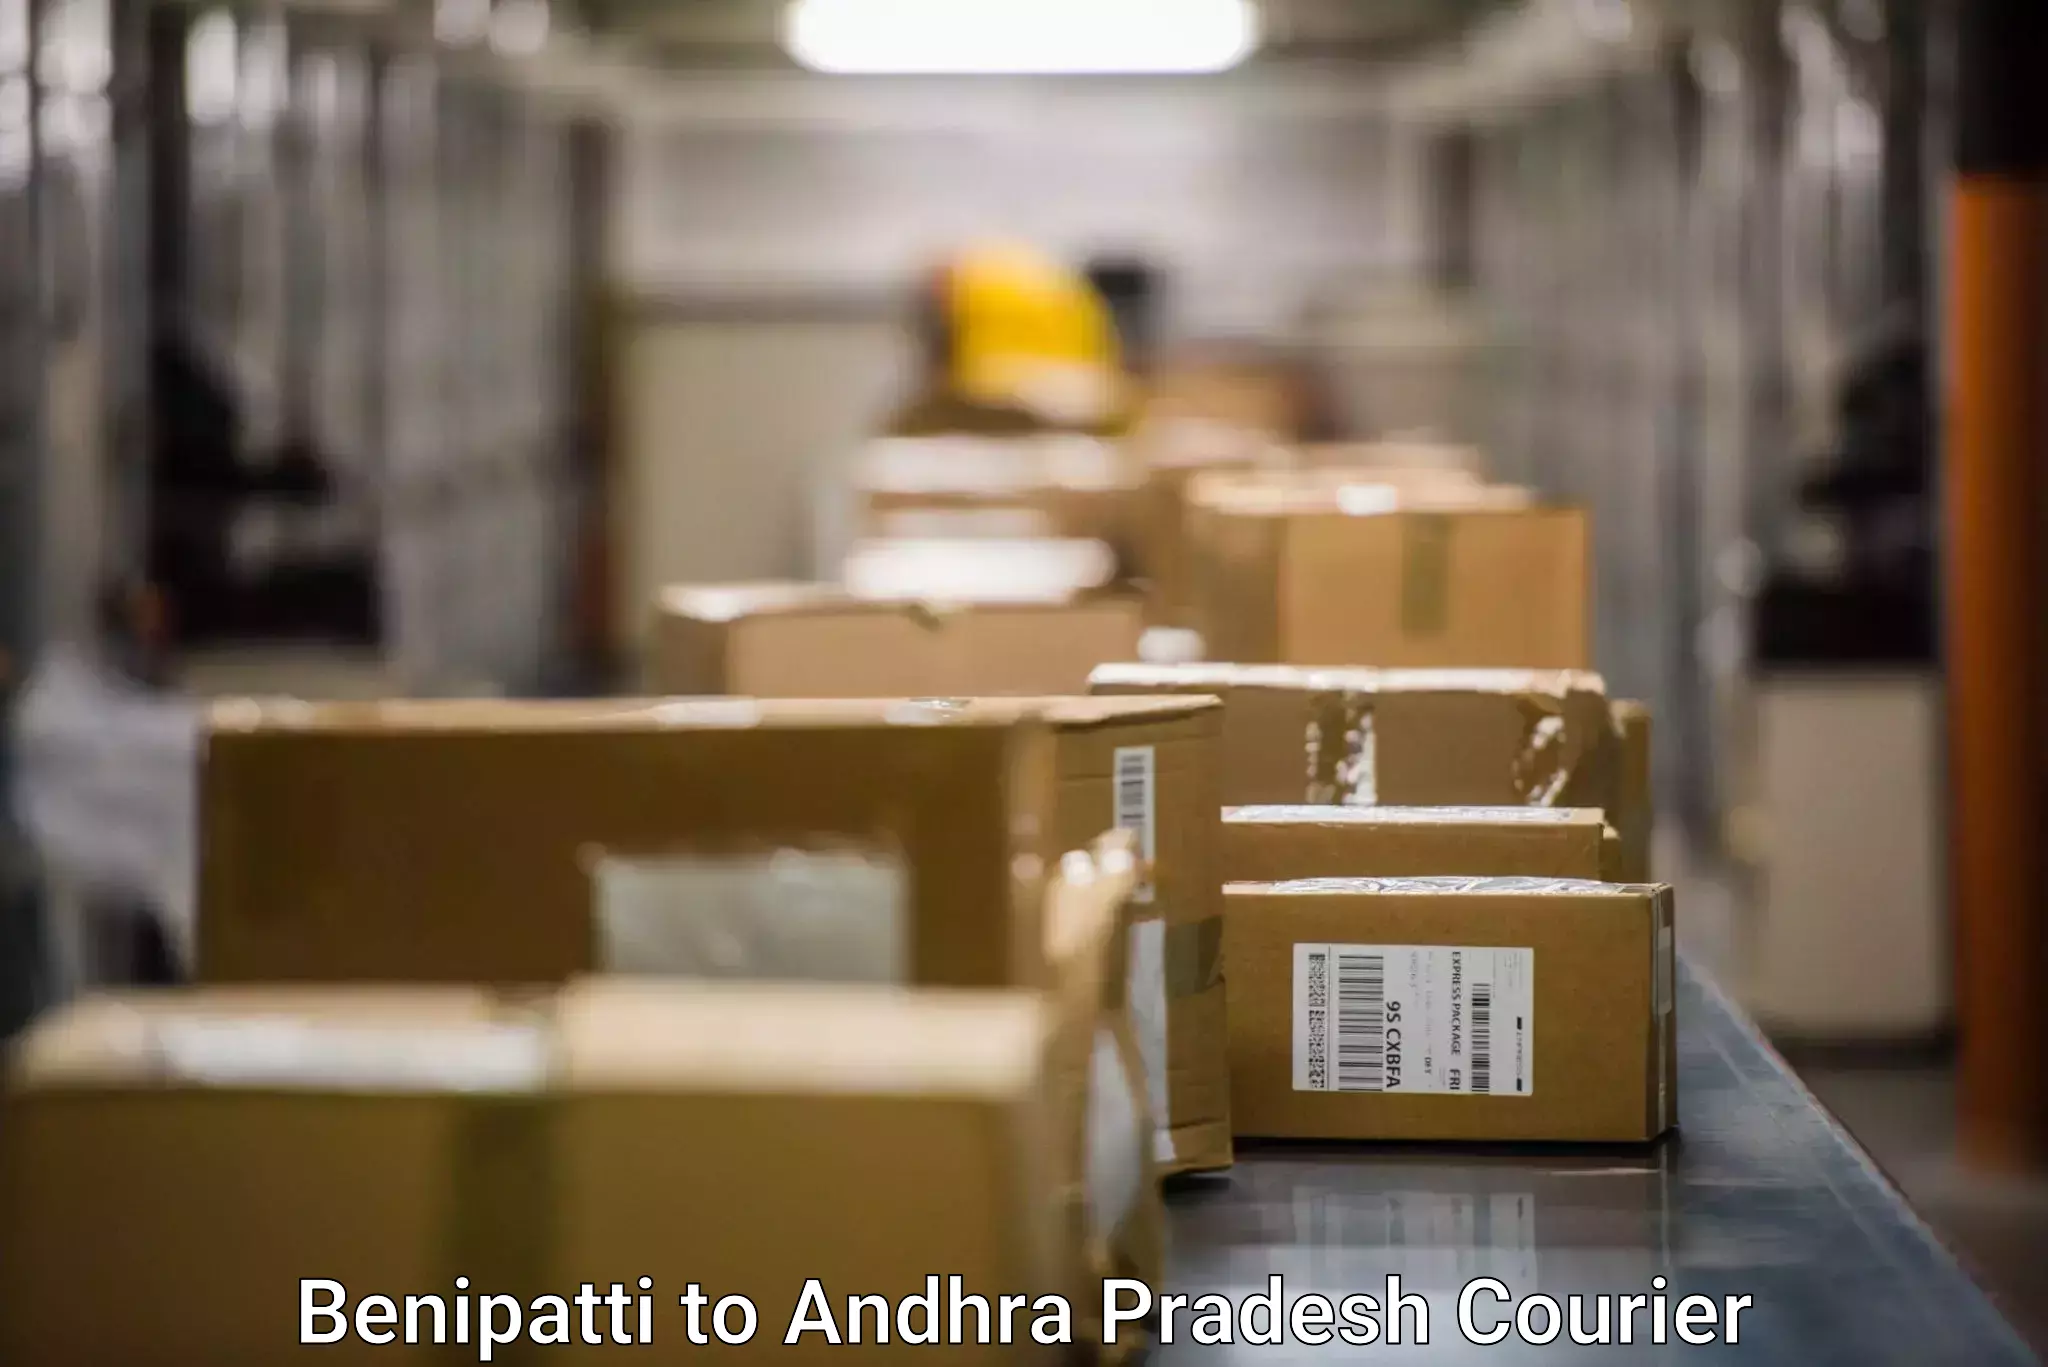 Express courier facilities Benipatti to Allagadda